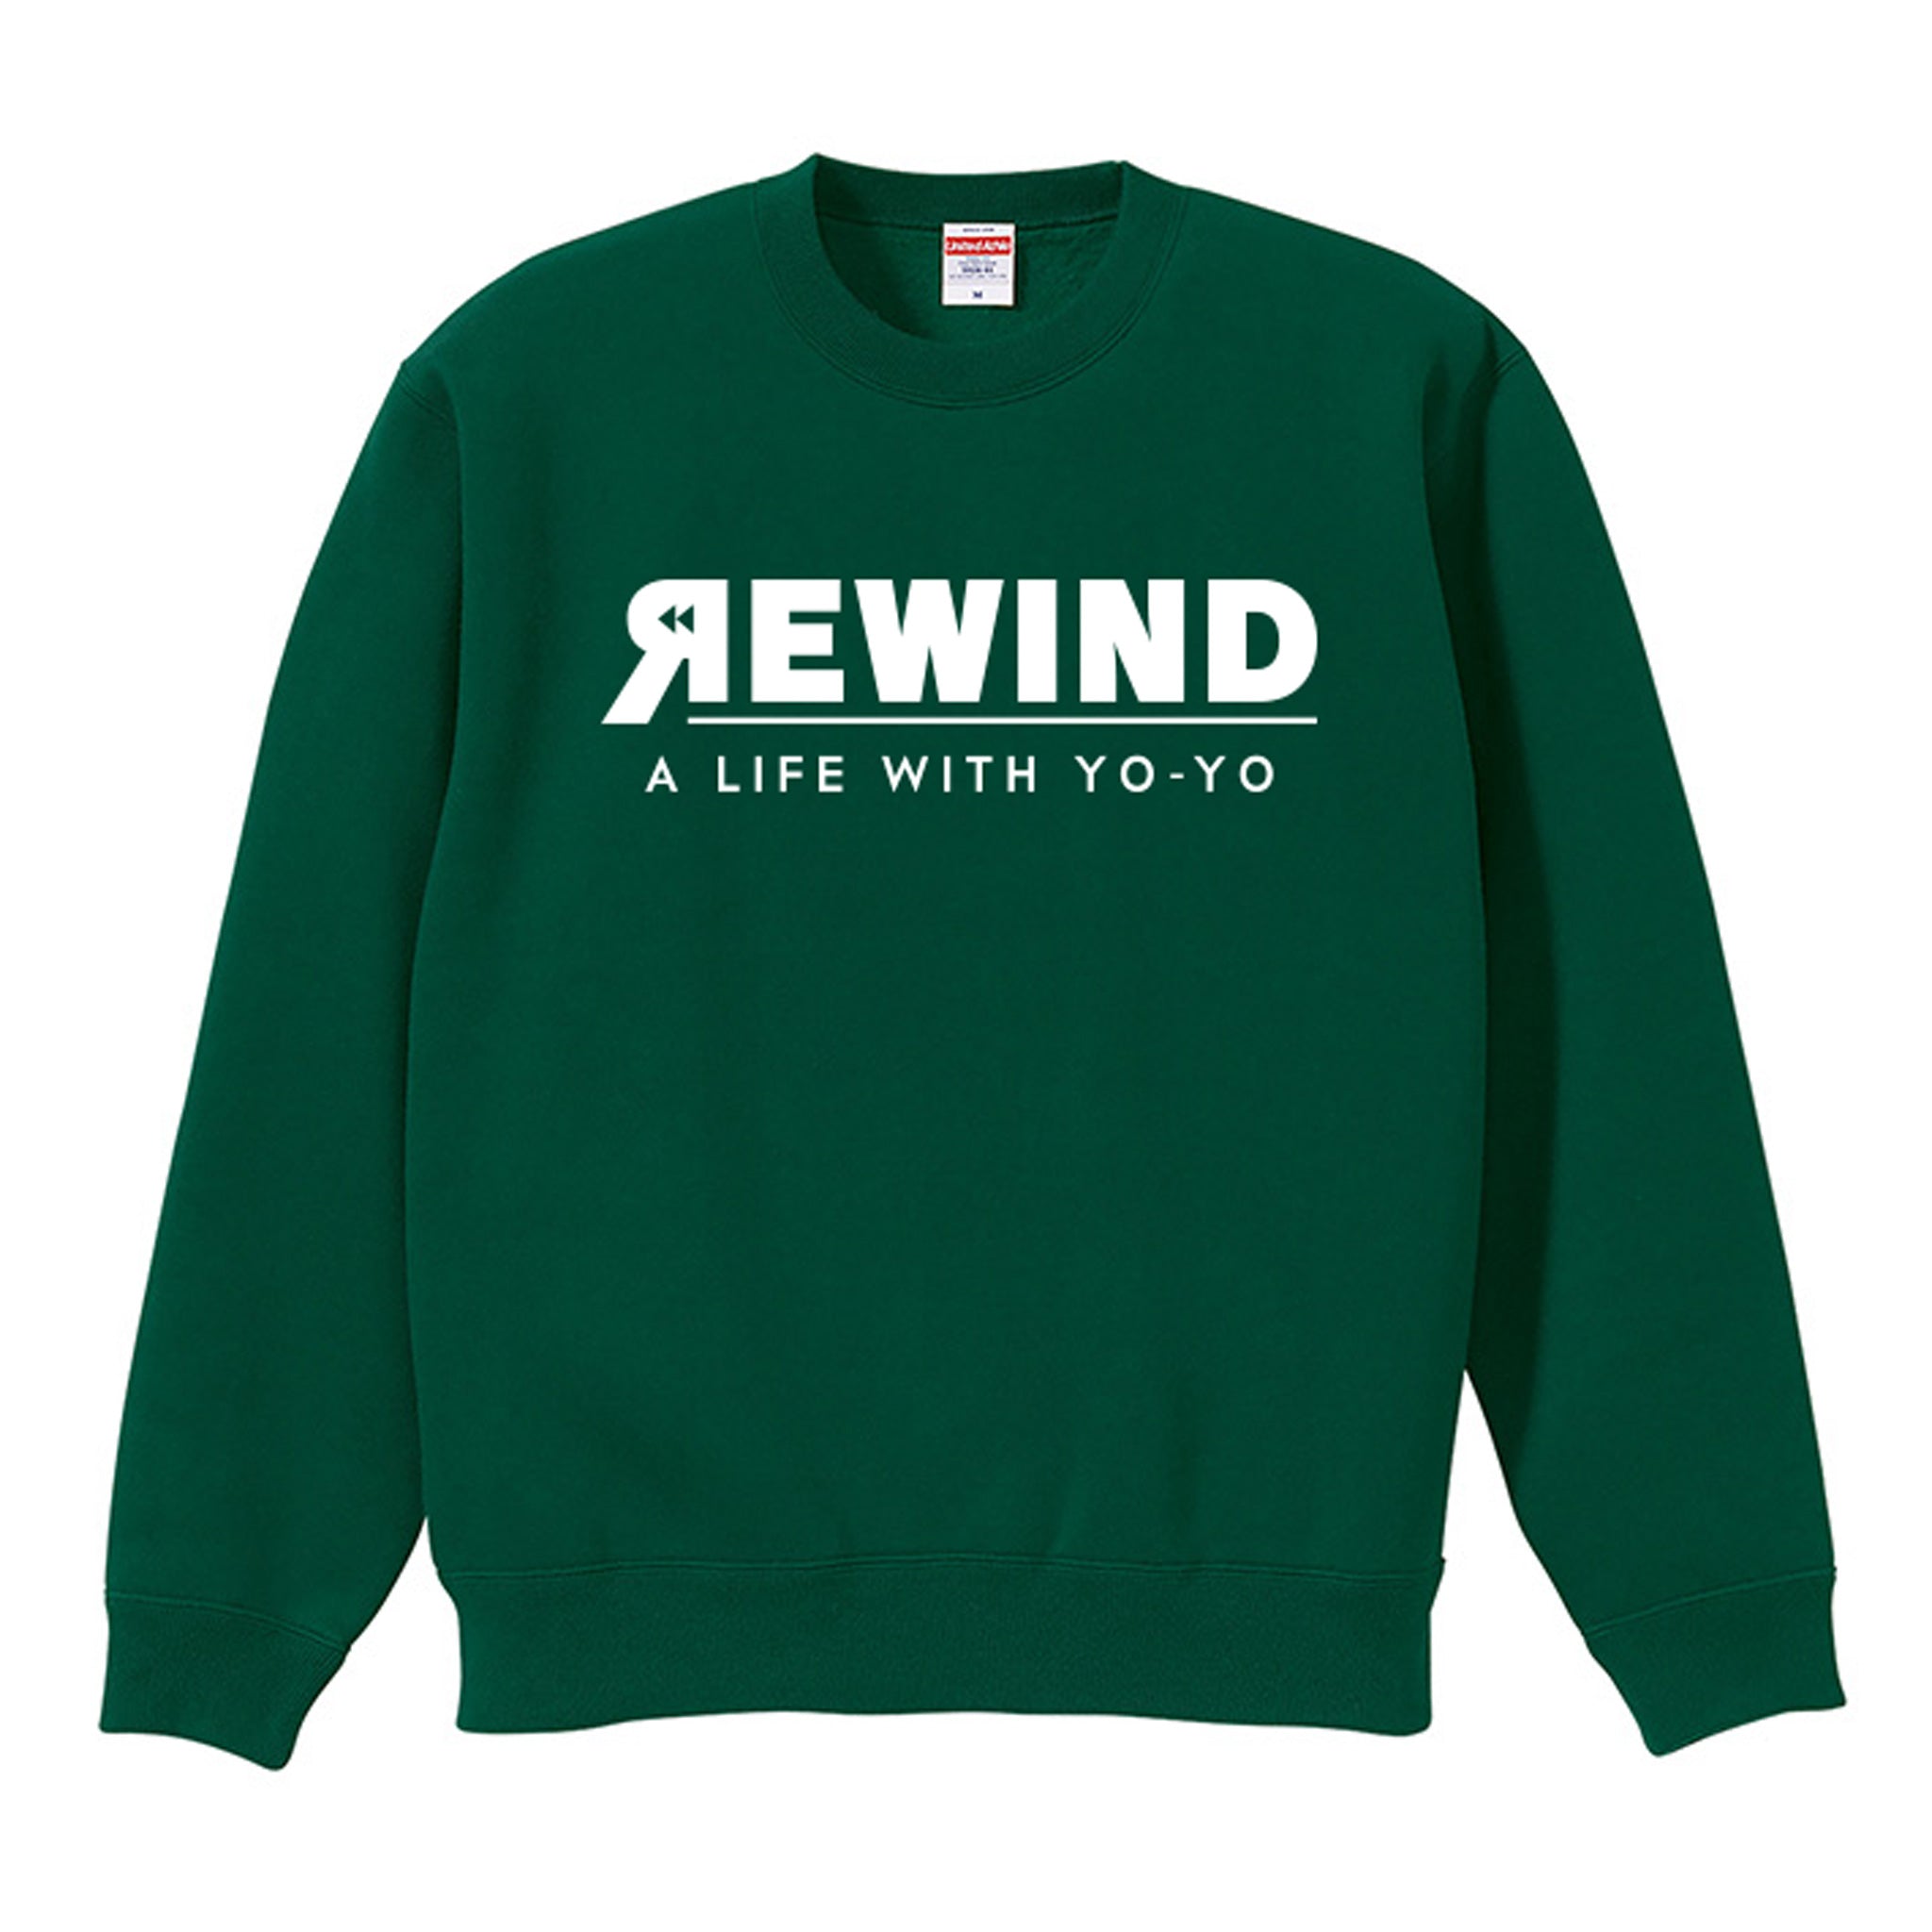 REWIND -A LIFE WITH YO-YO- Sweat (Green / White Logo)